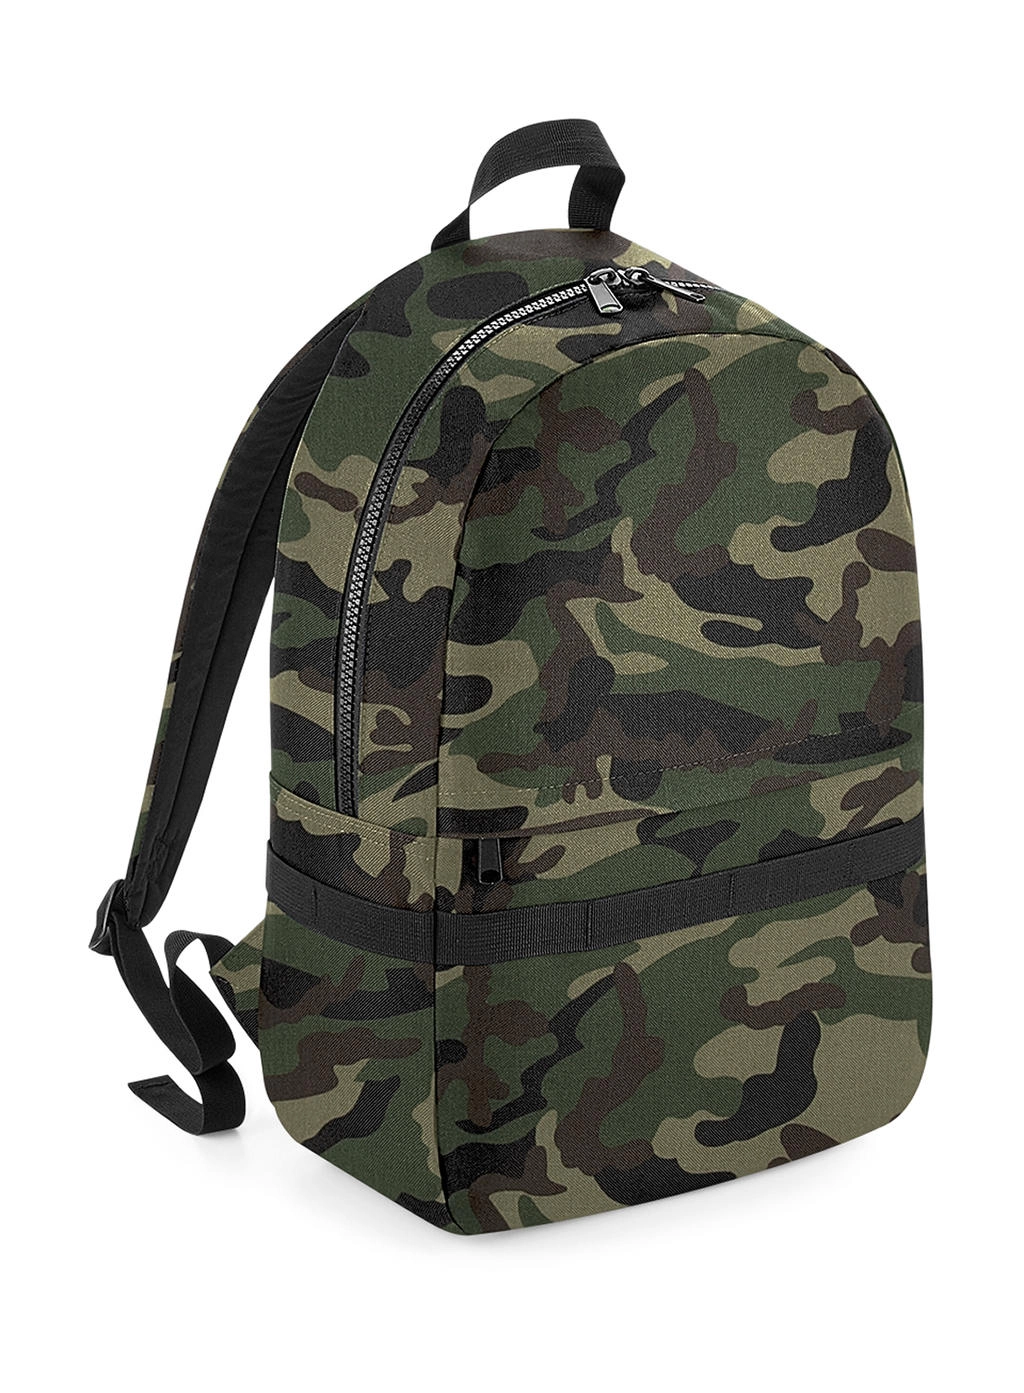 Modulr™ 20 Litre Backpack zum Besticken und Bedrucken in der Farbe Jungle Camo mit Ihren Logo, Schriftzug oder Motiv.